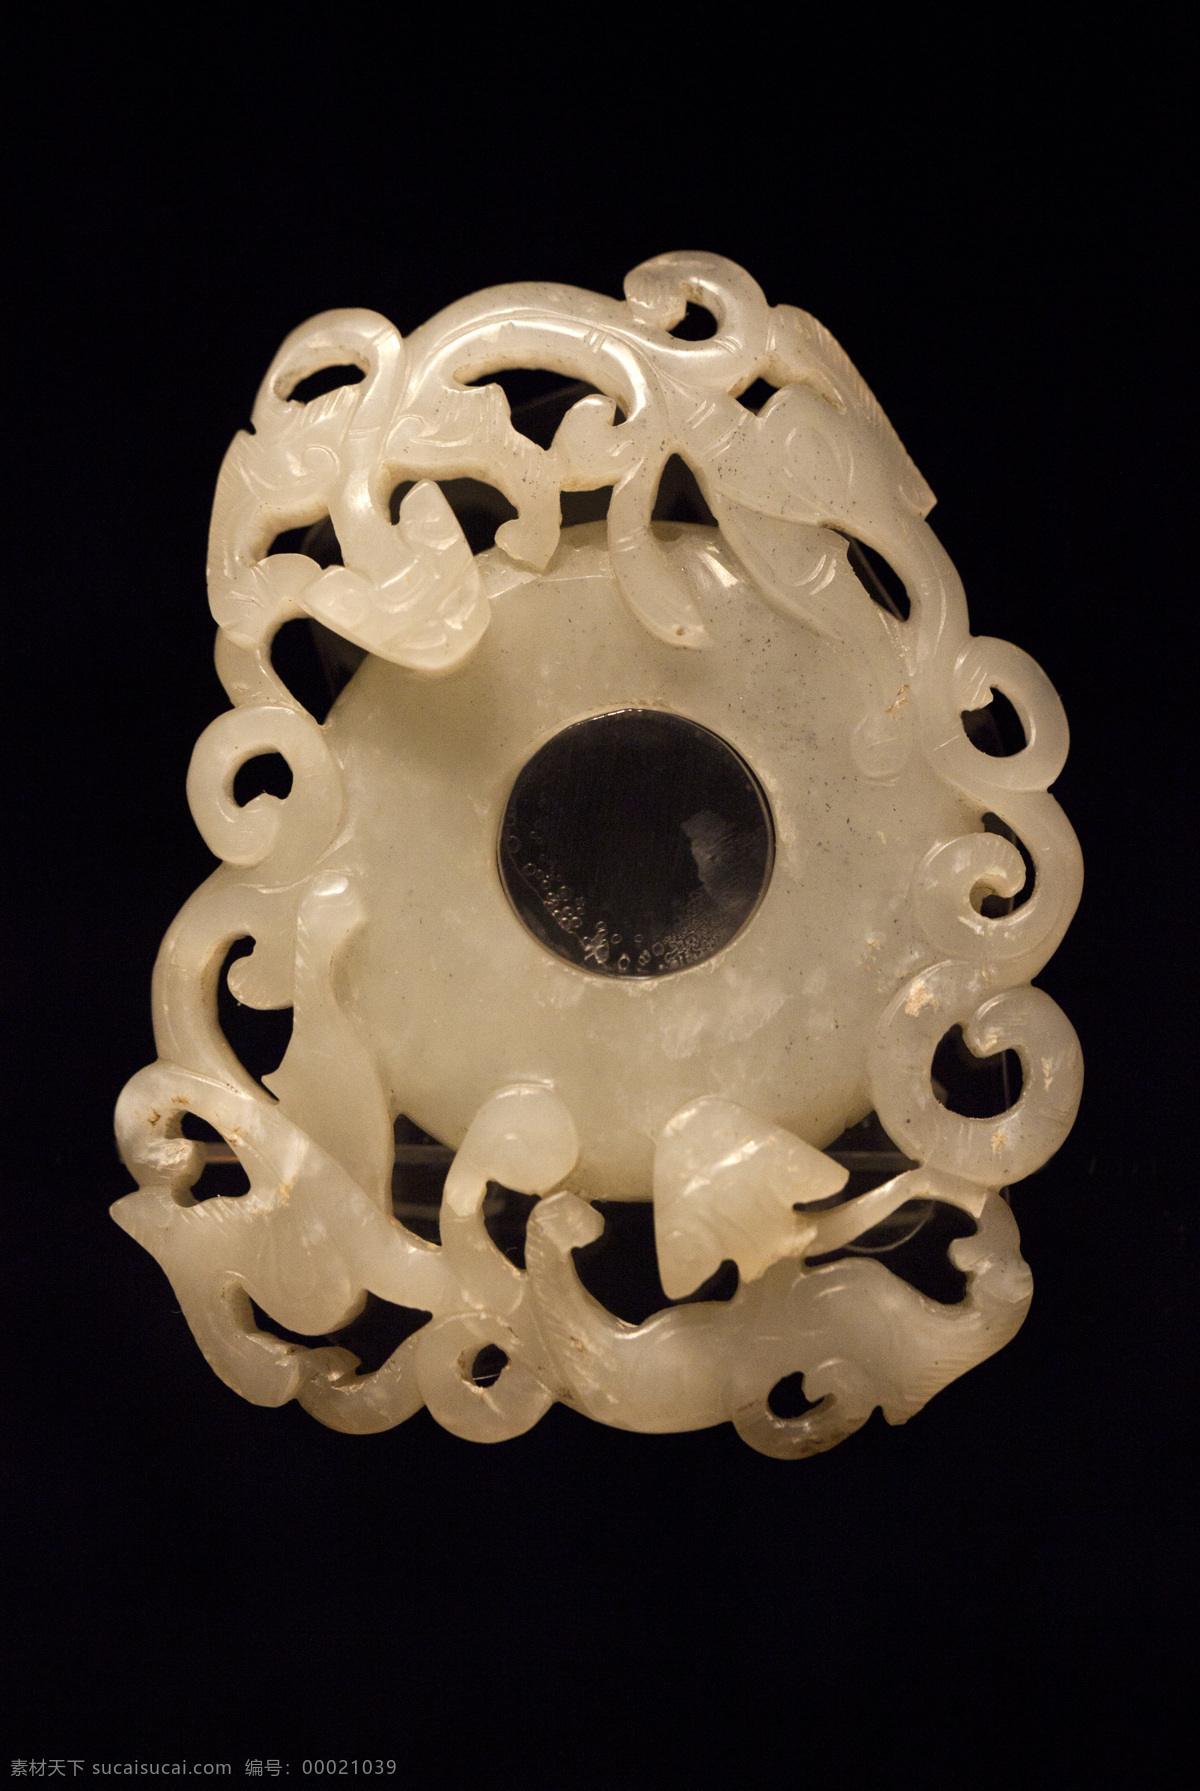 青玉双螭纹佩 清 青玉 螭 玉佩 雕刻 雕琢 出土 文物 首都 博物馆 玉石器 传统文化 文化艺术